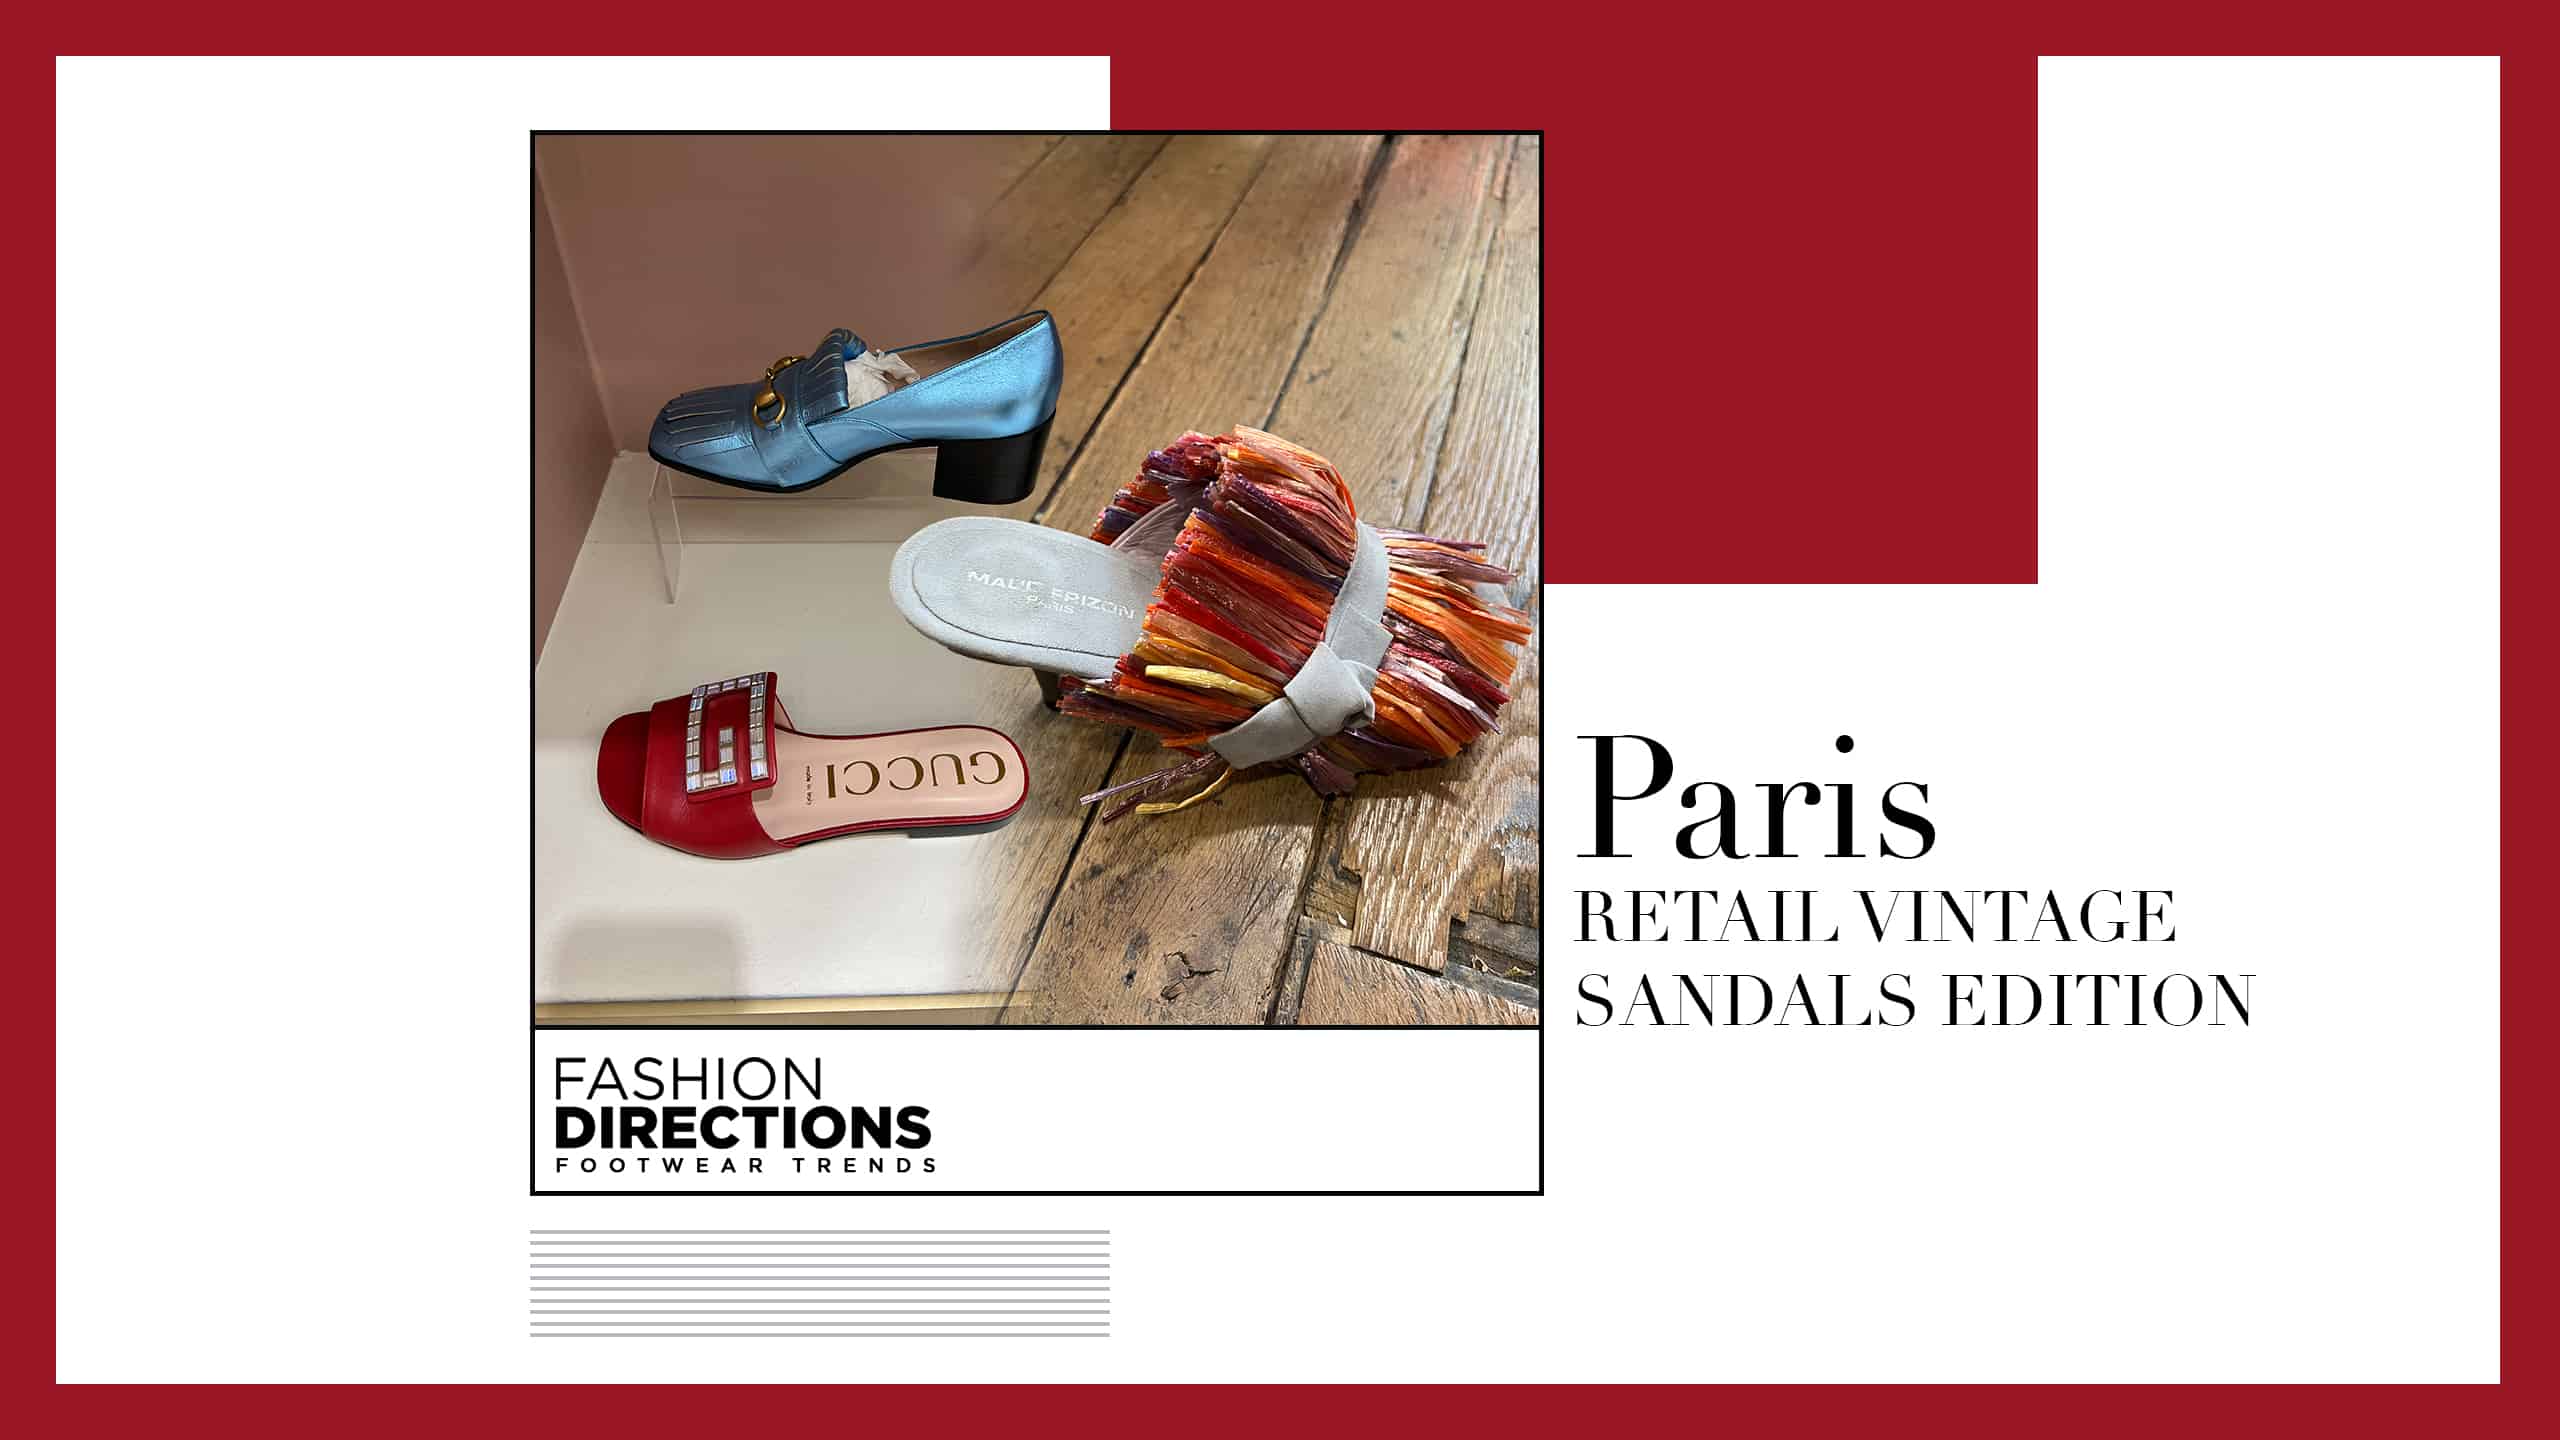 Paris Retail Vintage Sandals Edition